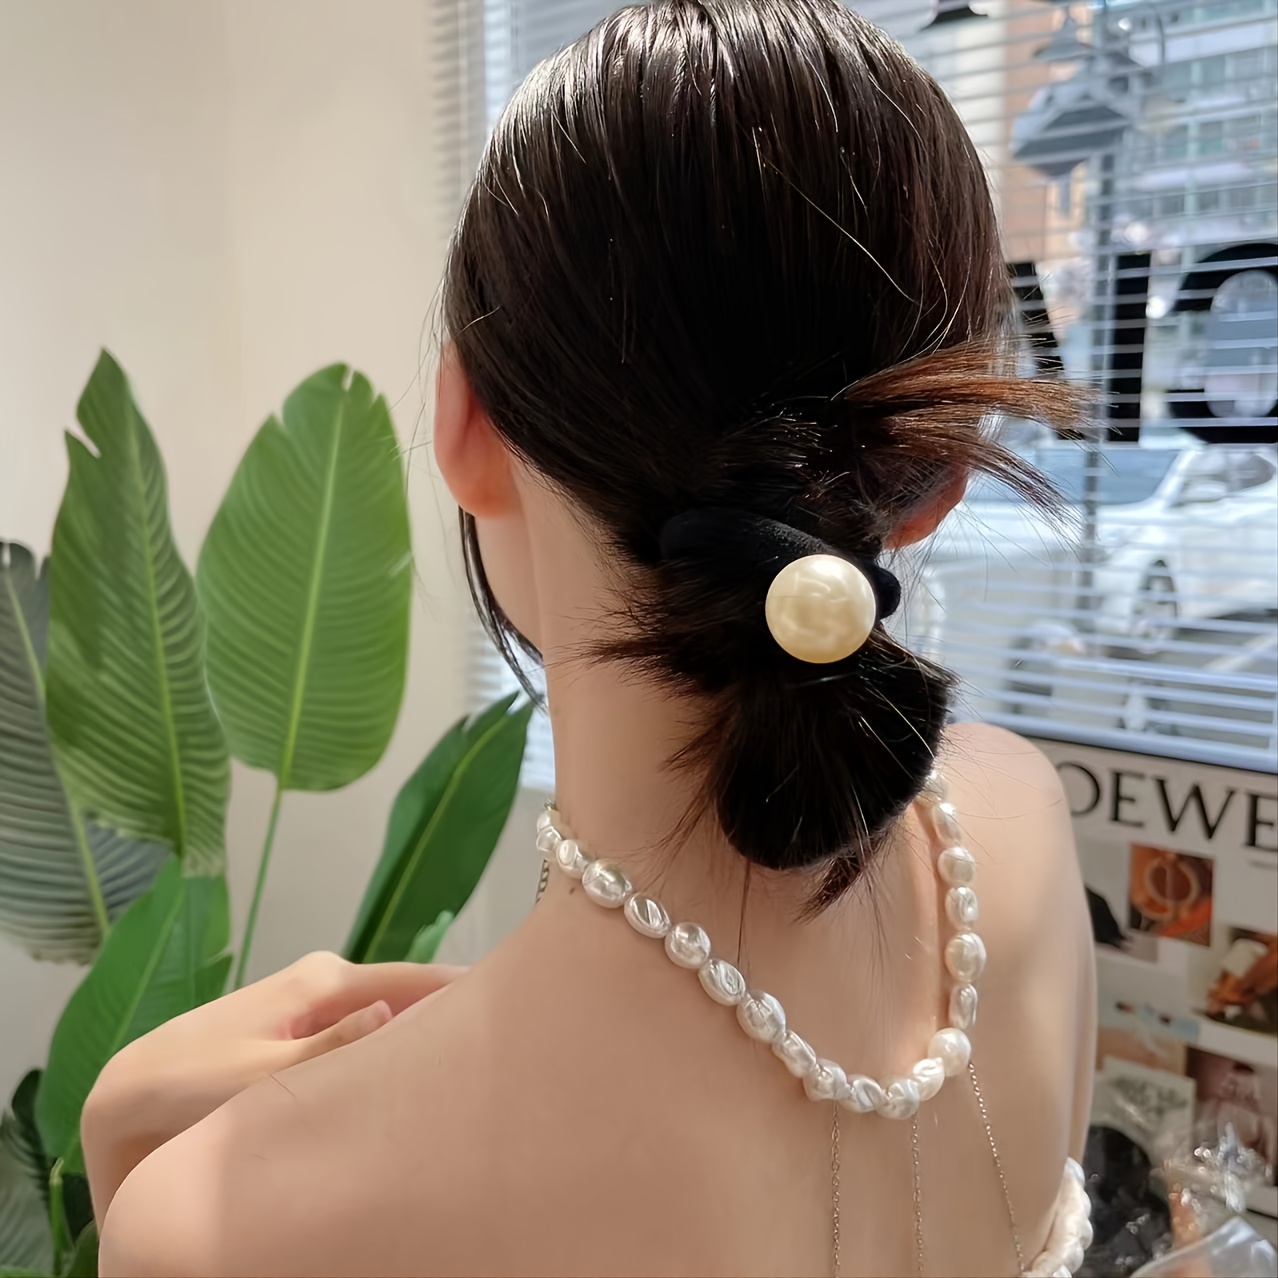 chanel hair tie  Hair accessories pearl, Hair accessories, Pearl hair pins